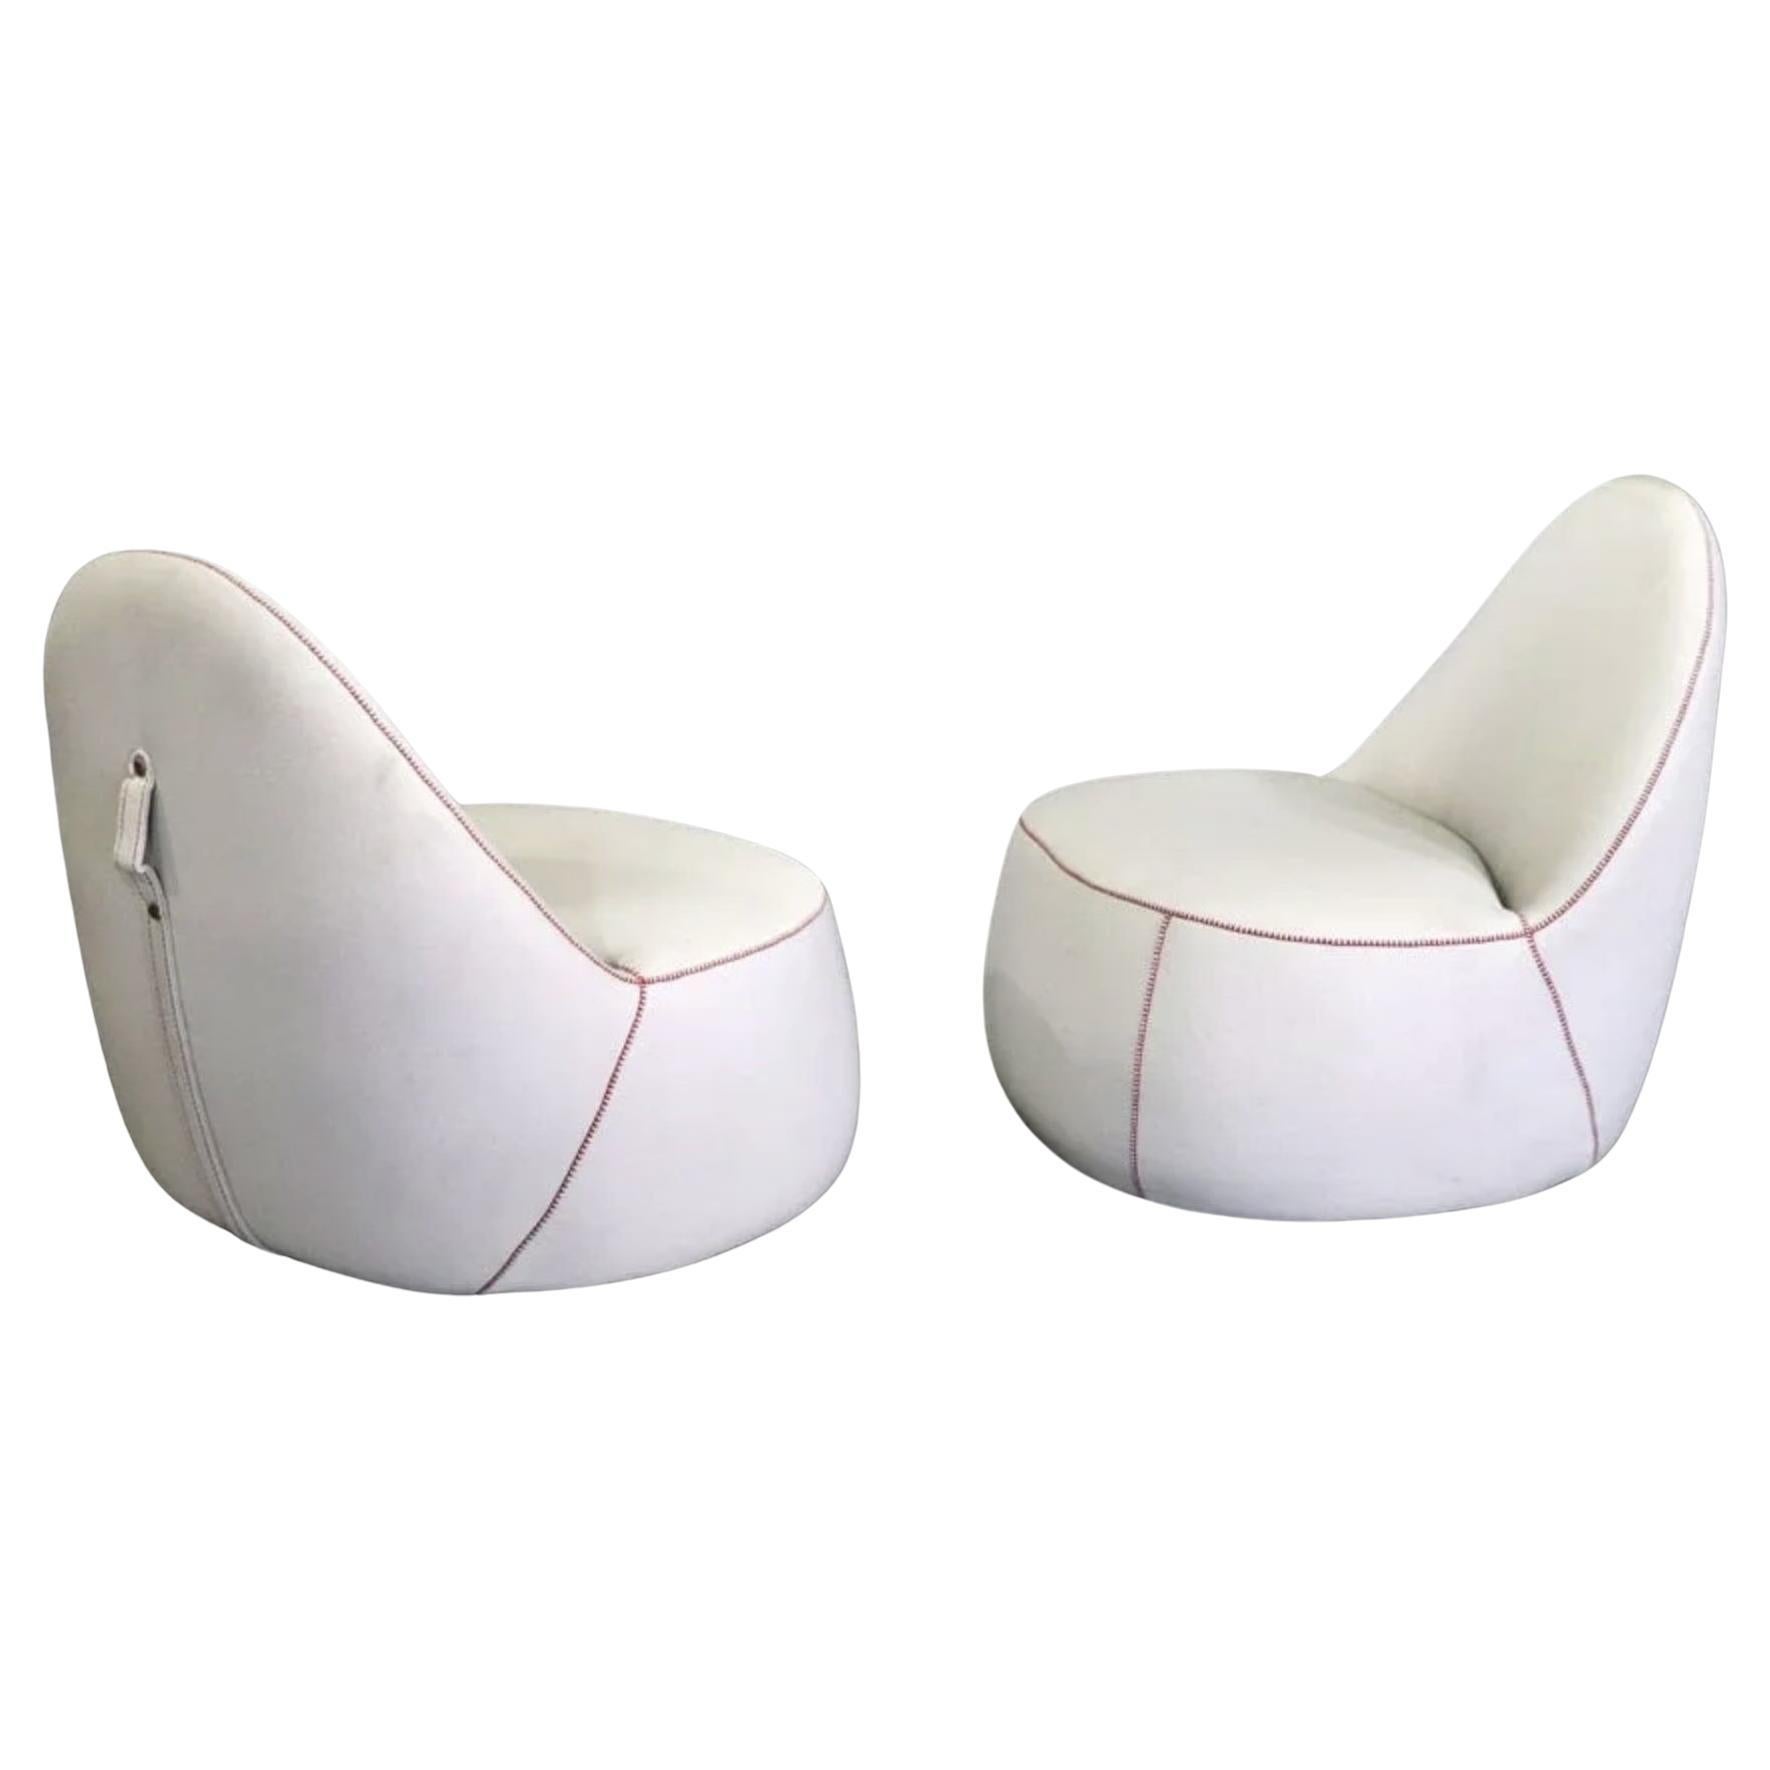 Bernhardt Design "Mitt Chairs" For Sale